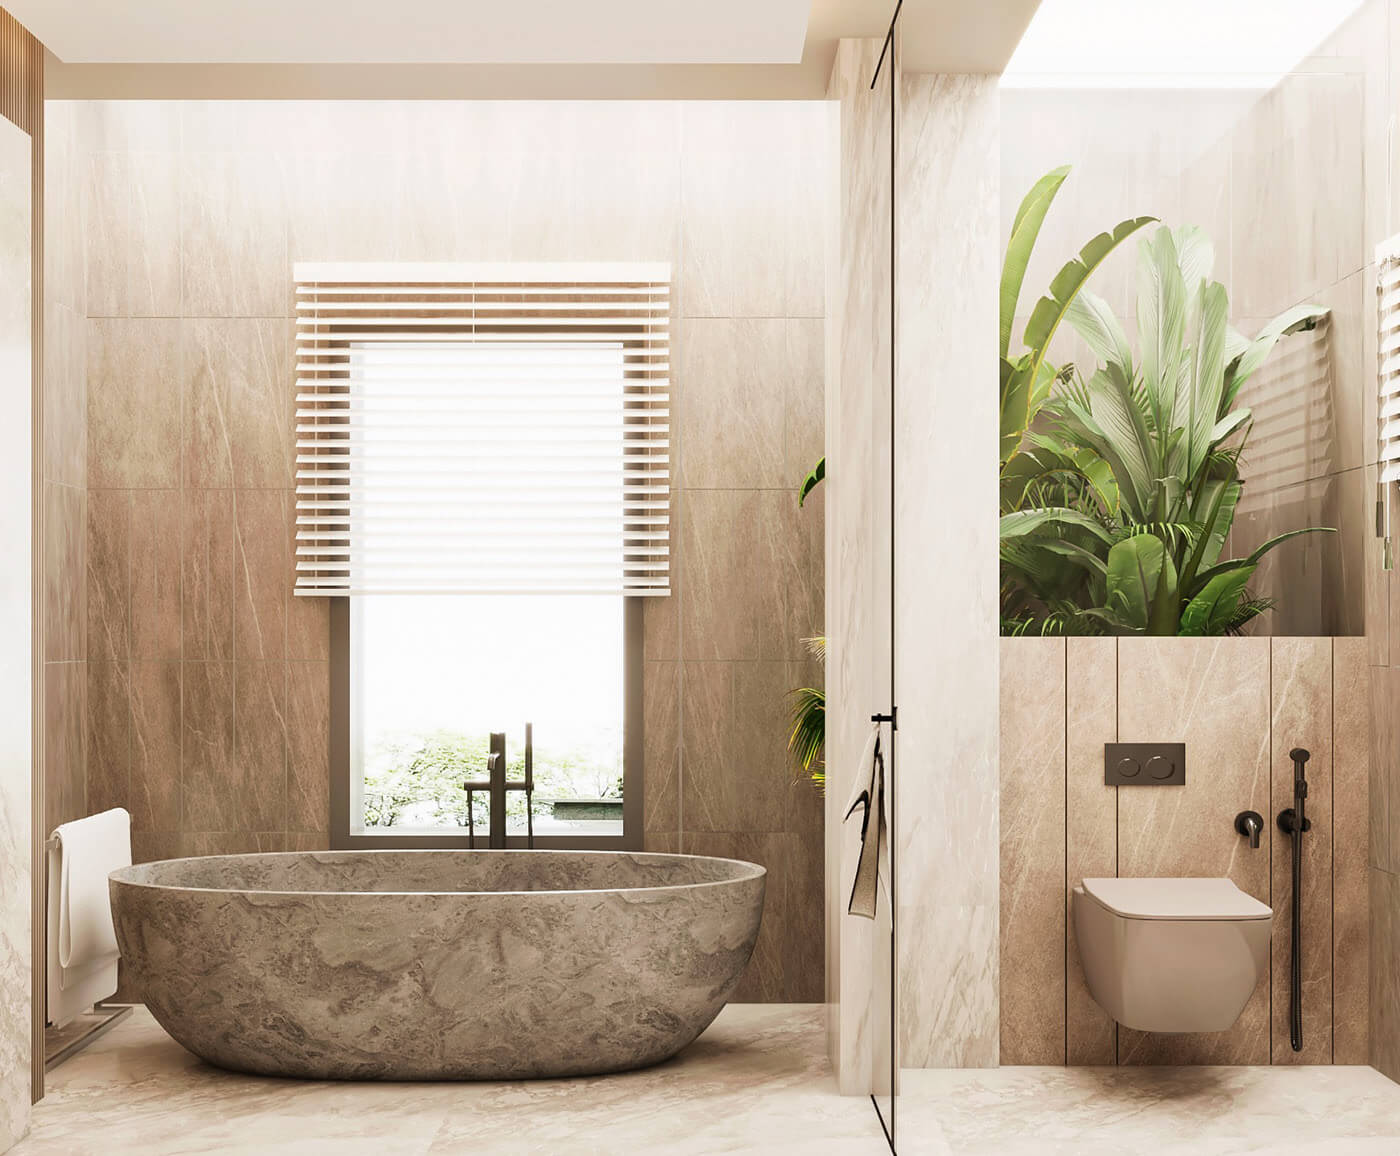 Thiết kế nhà tắm có bồn tắm sang trọng: Với thiết kế nhà tắm chỉnh chu và tinh tế cùng với bồn tắm thượng hạng, chúng tôi cam kết đưa đến cho bạn một không gian tắm đầy tiện nghi và sang trọng. Chúng tôi sẽ hợp tác cùng bạn để tạo ra một không gian tắm đẳng cấp, vừa đảm bảo chất lượng vừa đảm bảo tính thẩm mỹ.